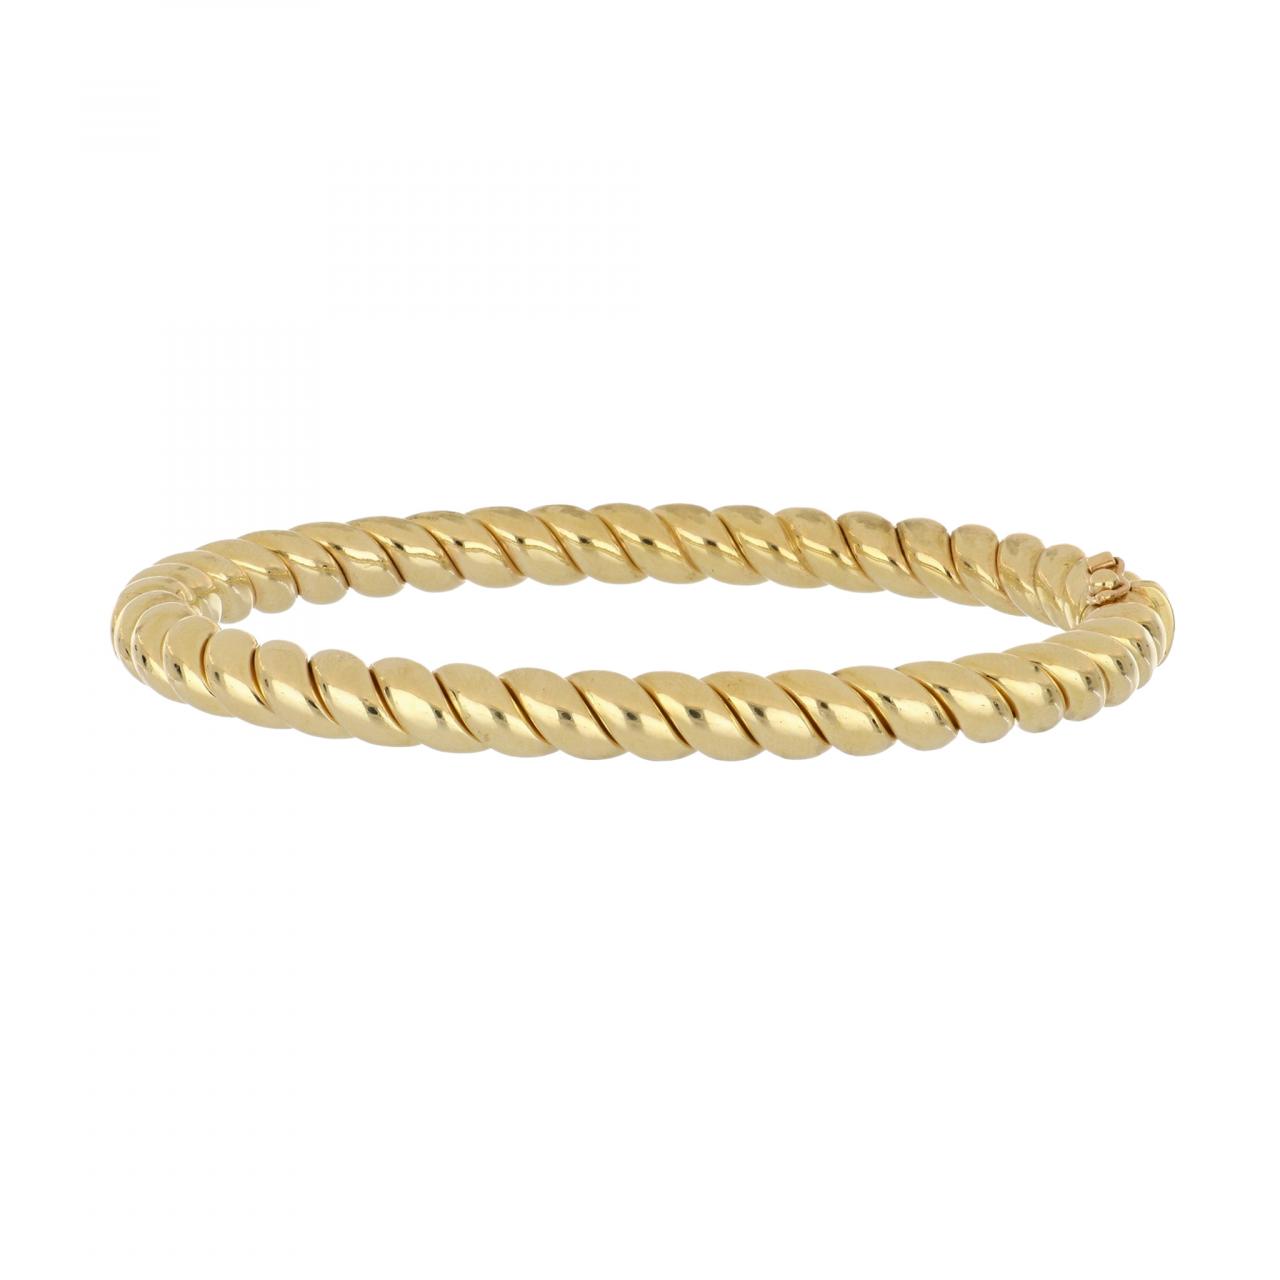 Delicate Twisted Leaf 22k Gold Bangle Bracelet | 22k gold bangles, Gold  bangles, Gold bangle bracelet